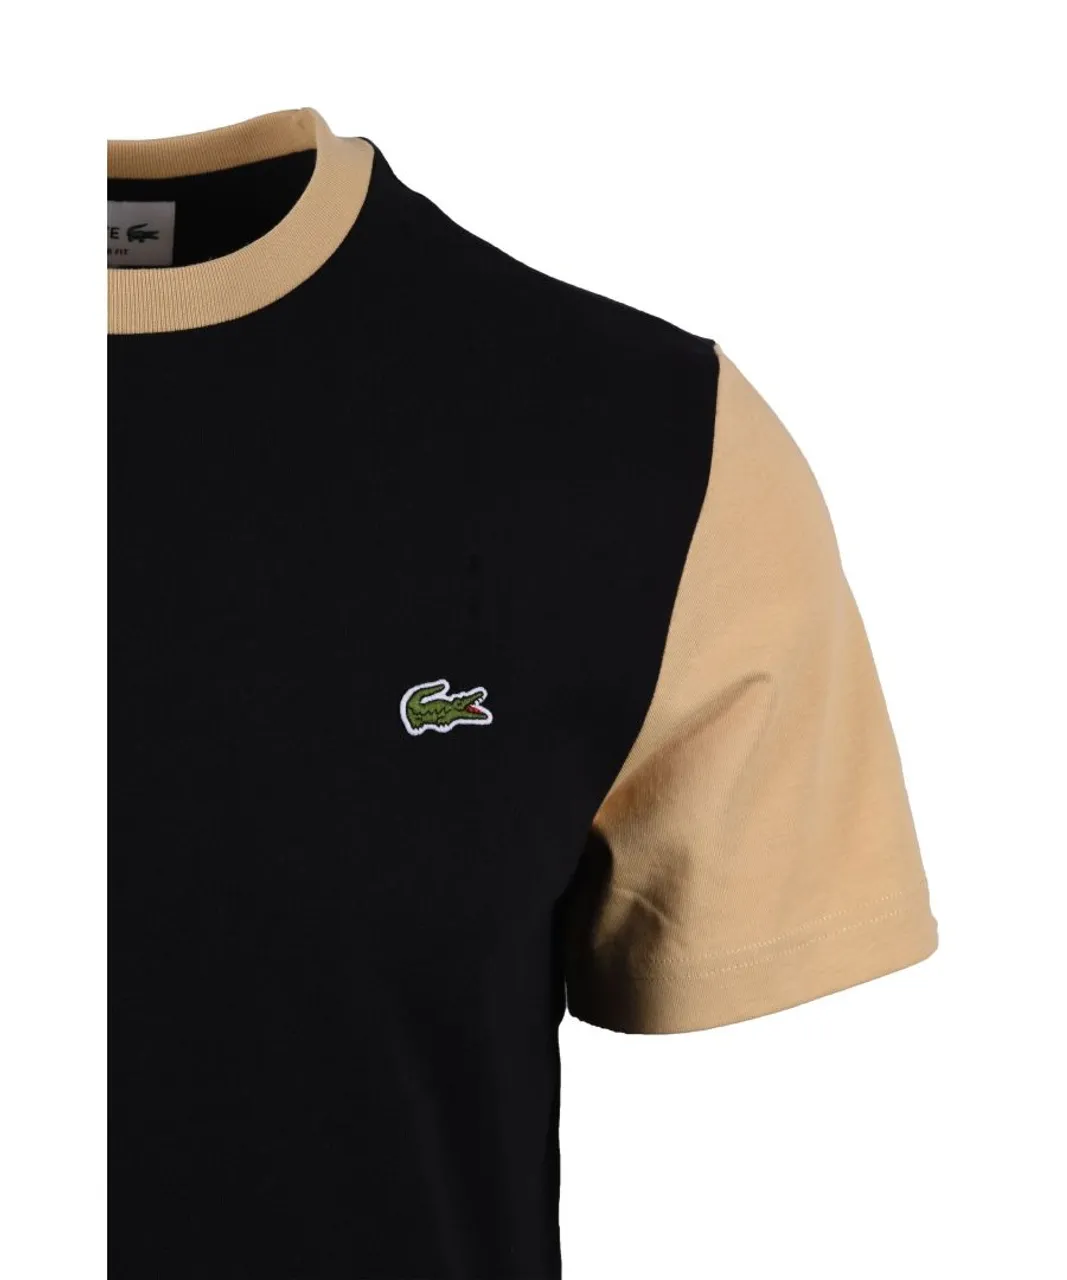 Lacoste Mens Colourblock T-Shirt Black/Croissant